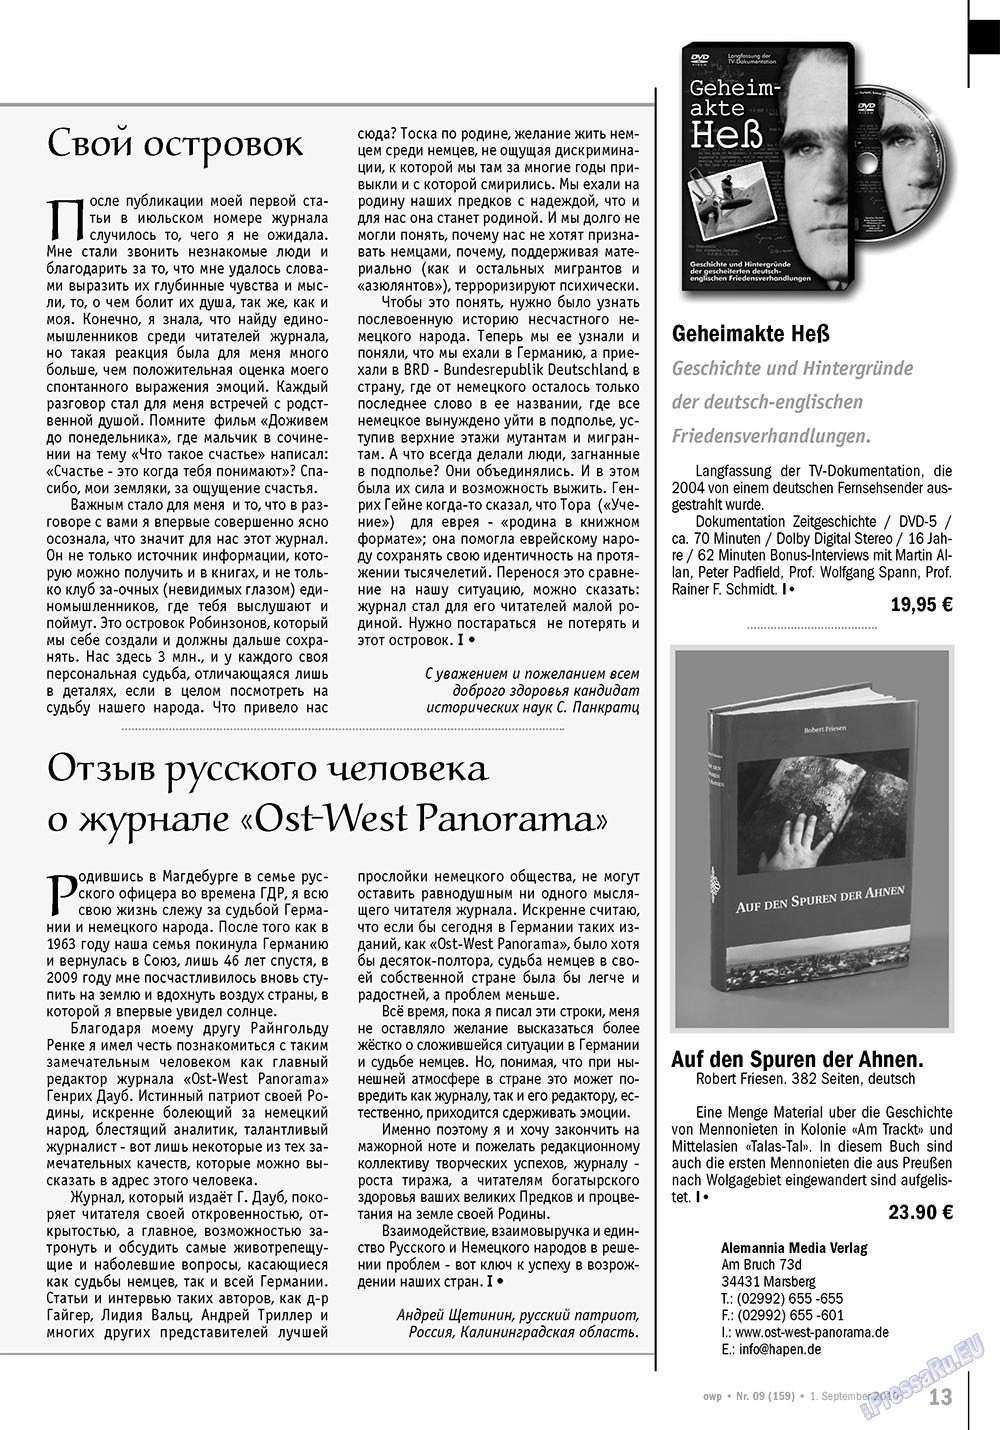 Ost-West Panorama (журнал). 2010 год, номер 9, стр. 13